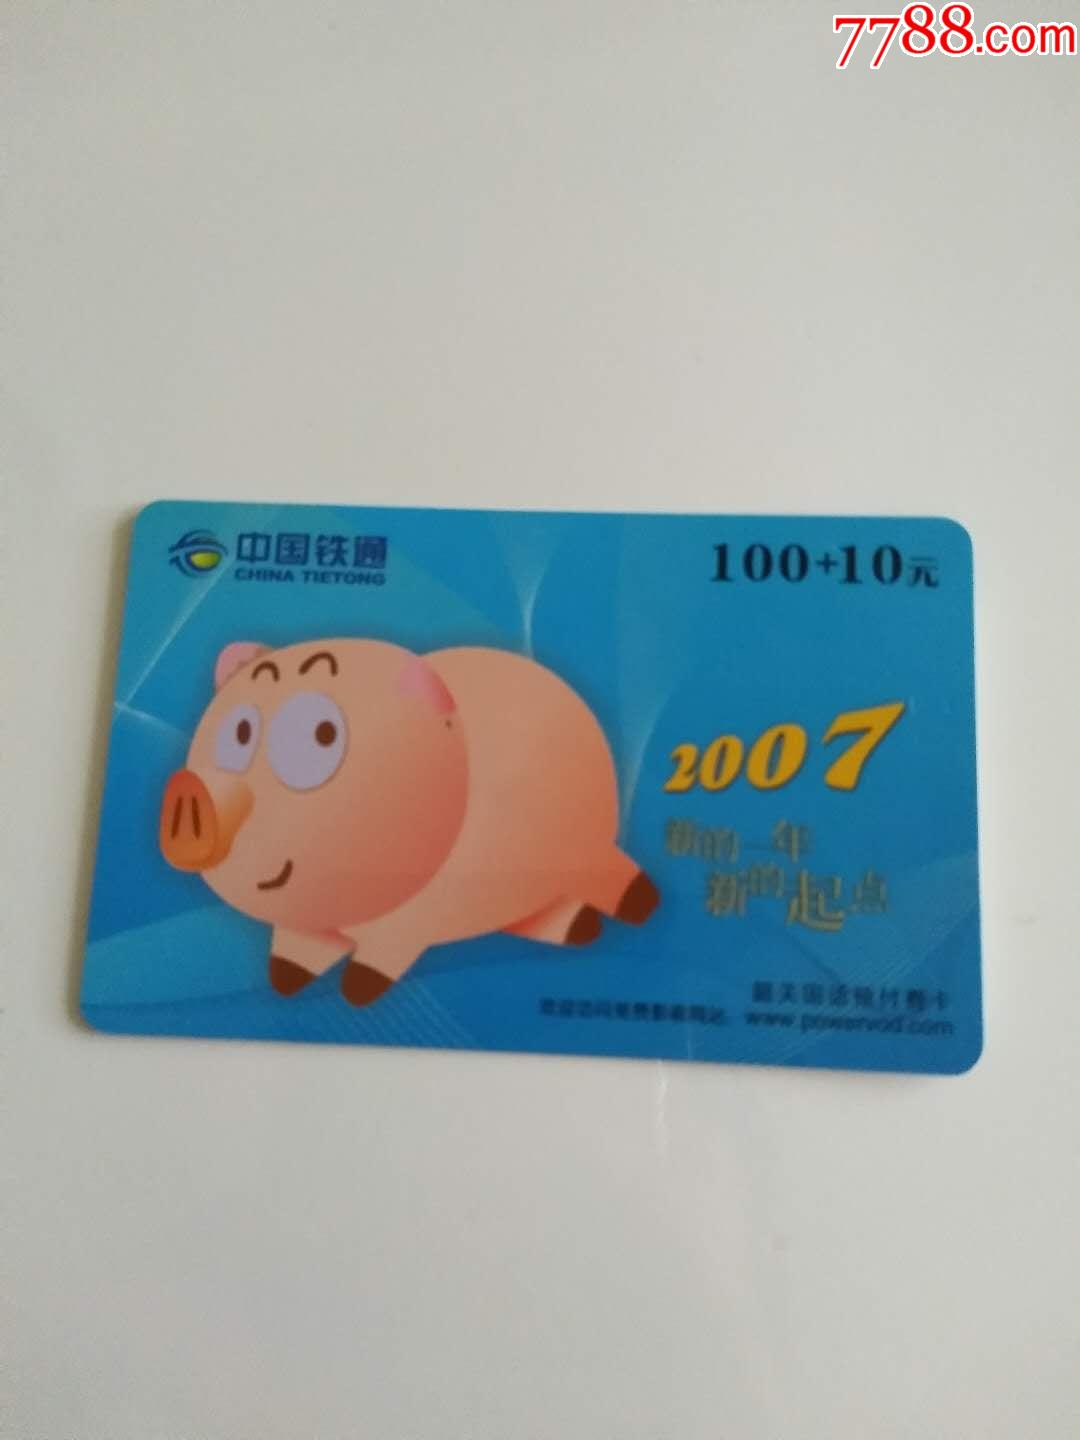 中国铁通电话卡充值卡